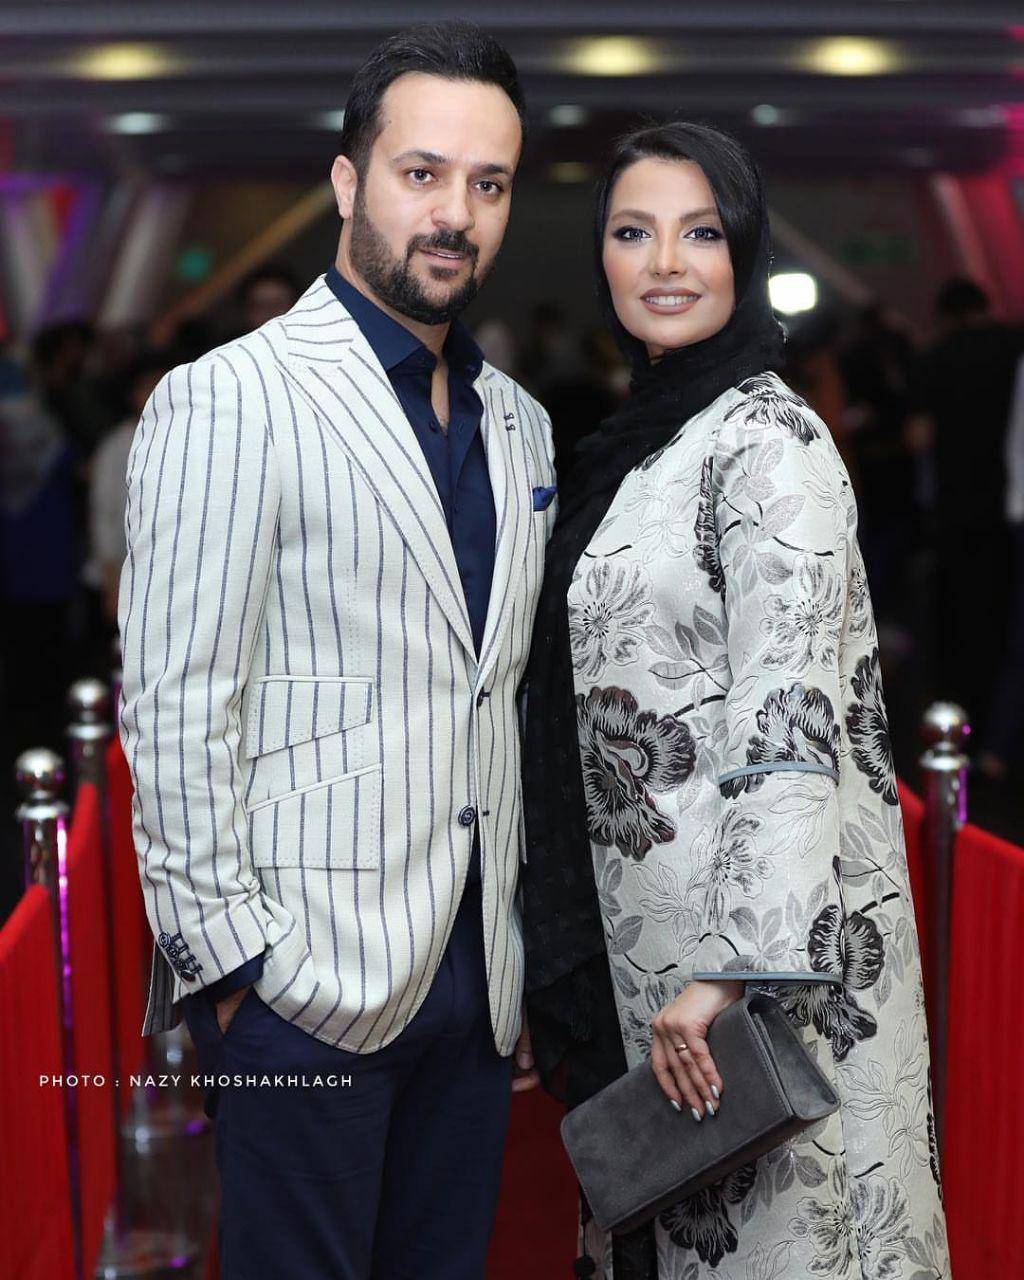 احمد مهرانفر و همسرش مونا فائض پور,اخبار هنرمندان,خبرهای هنرمندان,بازیگران سینما و تلویزیون